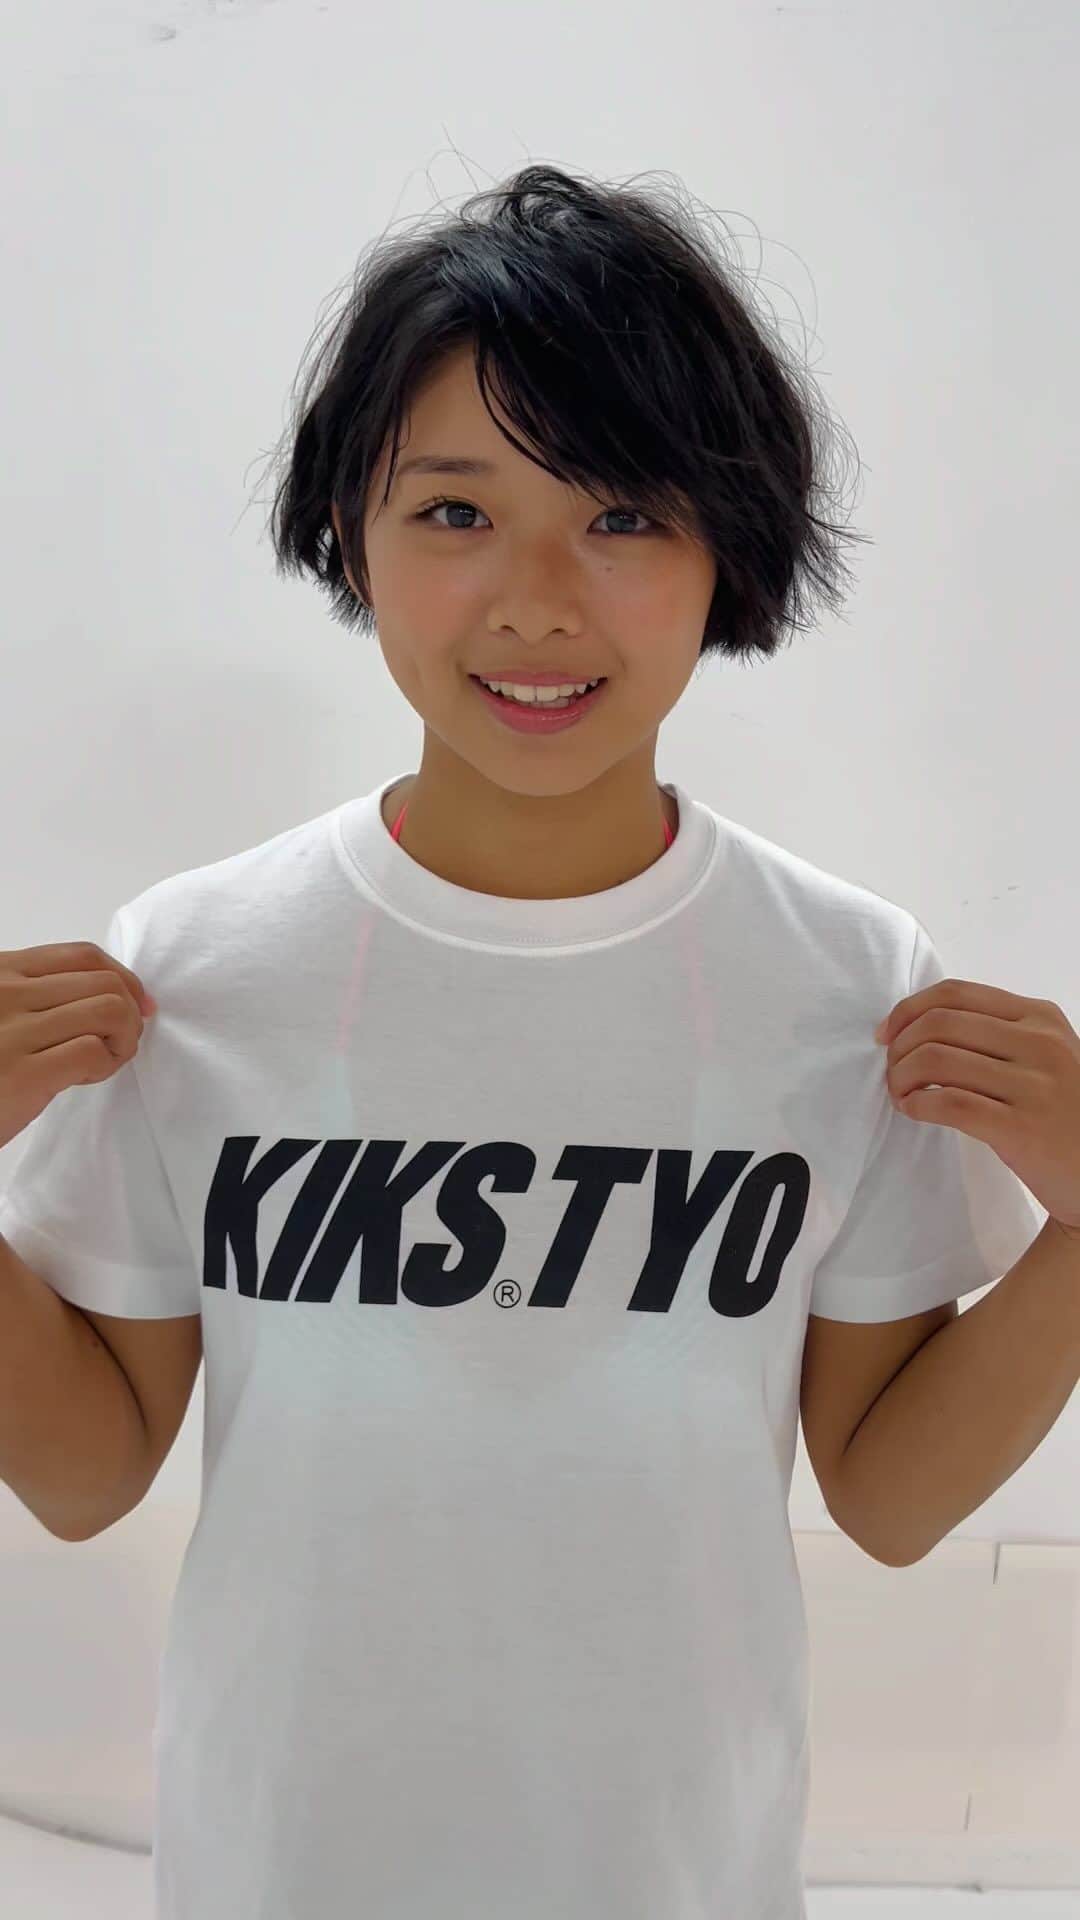 KIKSTYOのインスタグラム：「. KIKS GIRLS TEEに新作が登場!!! 皆様お待ちかねの年に一度の”週刊プレイボーイ"とのコラボレーション企画!!!  今回のモデルには、桑島海空さんを起用。 2004年生まれ、東京都出身。 SNSで「無加工でも可愛い」と話題になり、小柄さと日に焼けた肌と元気なキャラクターで幅広い年代のファンを獲得。 昨年11月グラビアに初挑戦以来、表紙を次々と飾るなど注目を集めている。  抽選で3名様にサイン入りチェキをプレゼント致します。先着順ではありませんので、ご了承下さい。 注）こちらの商品は予約商品となっております。 注）予約商品のため、注文後のキャンセルはお断りさせて頂きます。  注）画像はサンプルです。インクジェットプリントの為、実際とは若干異なる場合がございます。 受注期間 2023年9月22日(金)～2023年10月1日(日)までとなります。 発送は2023年10月下旬予定となります。 予約商品のため、到着日のご指定は頂けません。 . COMING SOON: New KIKS TYO x MIKU KUWAJIMA x WEEKLY PLAYBOY JAPAN Magazine (aka SHUPURE) tees will be available for pre-order at kikstyo.com (Japan) and kikstyoshop.com (International) this FRIDAY SEPTEMBER 22nd.  Pre-order ends Sunday, Octber 1st, 2023 or while supplies last.  Buy these pre-order tees for a chance to win 1 of 5 autographed "Cheki" photos from MIKU KUWAJIMA. Get 1 entry per purchase. Winners will get an exclusive autographed photo with order.  . #kikstyo #kiksgirls #shupure #週刊プレイボーイ #グラビア #mikukuwajima #桑島海空 #logotee #offwhite #aj1 #airjordan1」